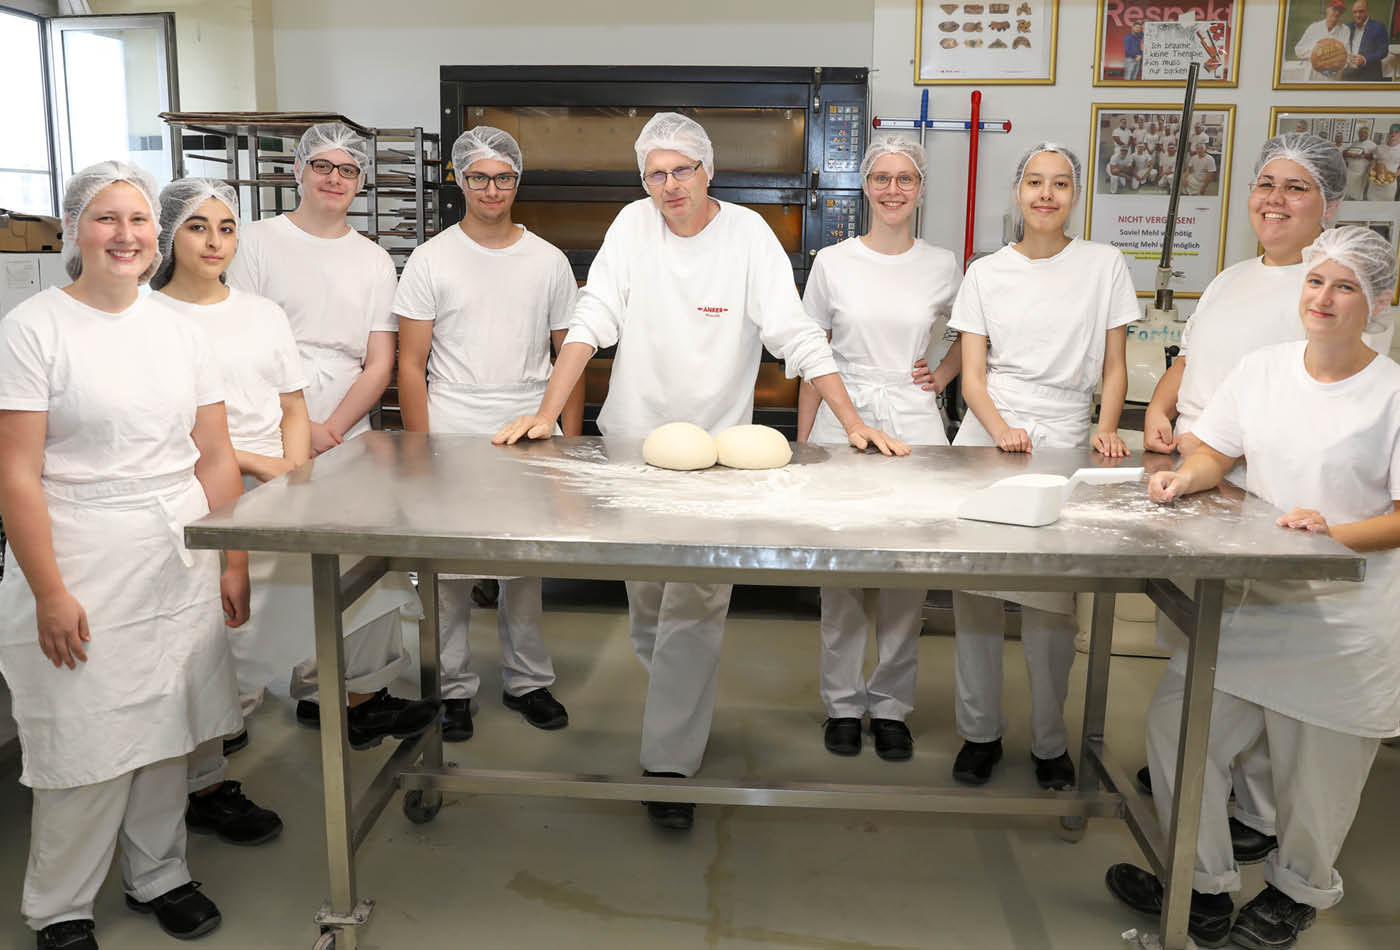 Acht neue Lehrlinge haben per 01.09.2020 ihre Bäcker-Ausbildung bei Ankerbrot begonnen. Herzlich willkommen bei uns!